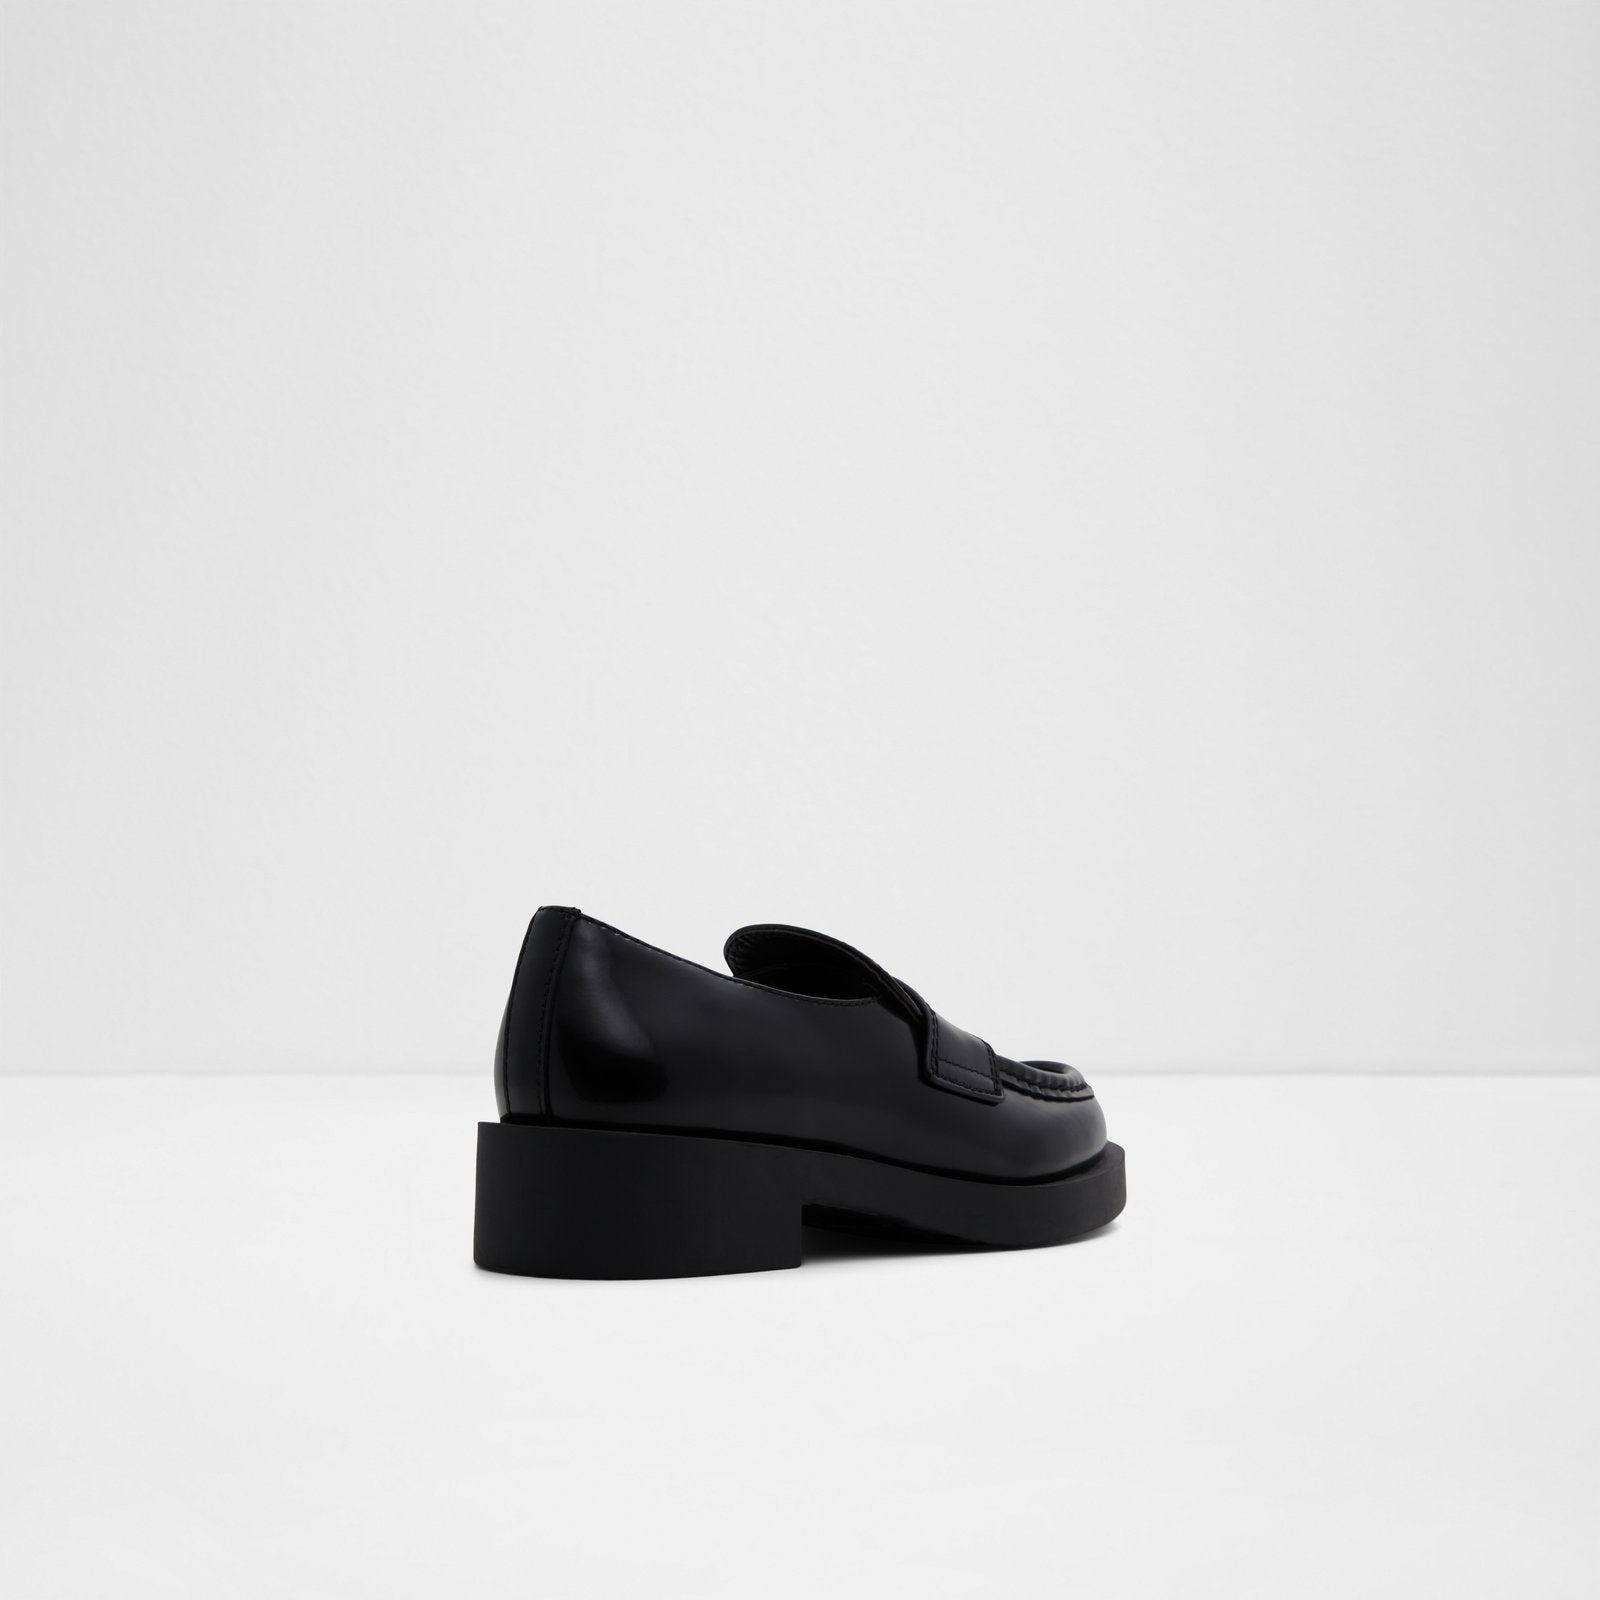 Aldo Women's Loafers Sylla (Black) – ALDO UK